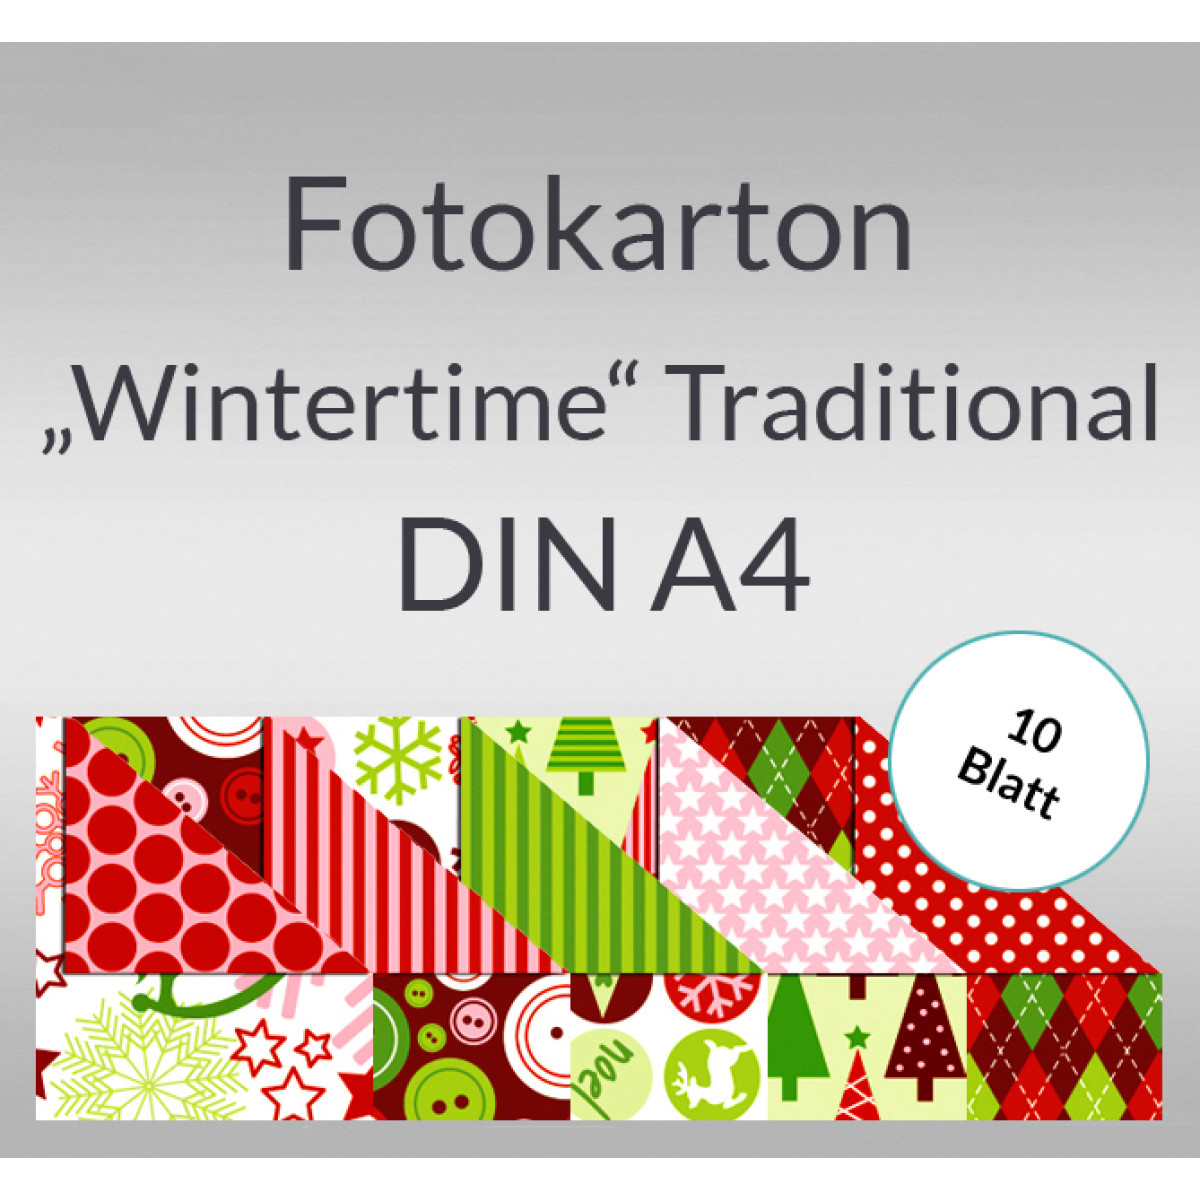 Fotokarton "Wintertime" Traditional DIN A4 - 10 Blatt